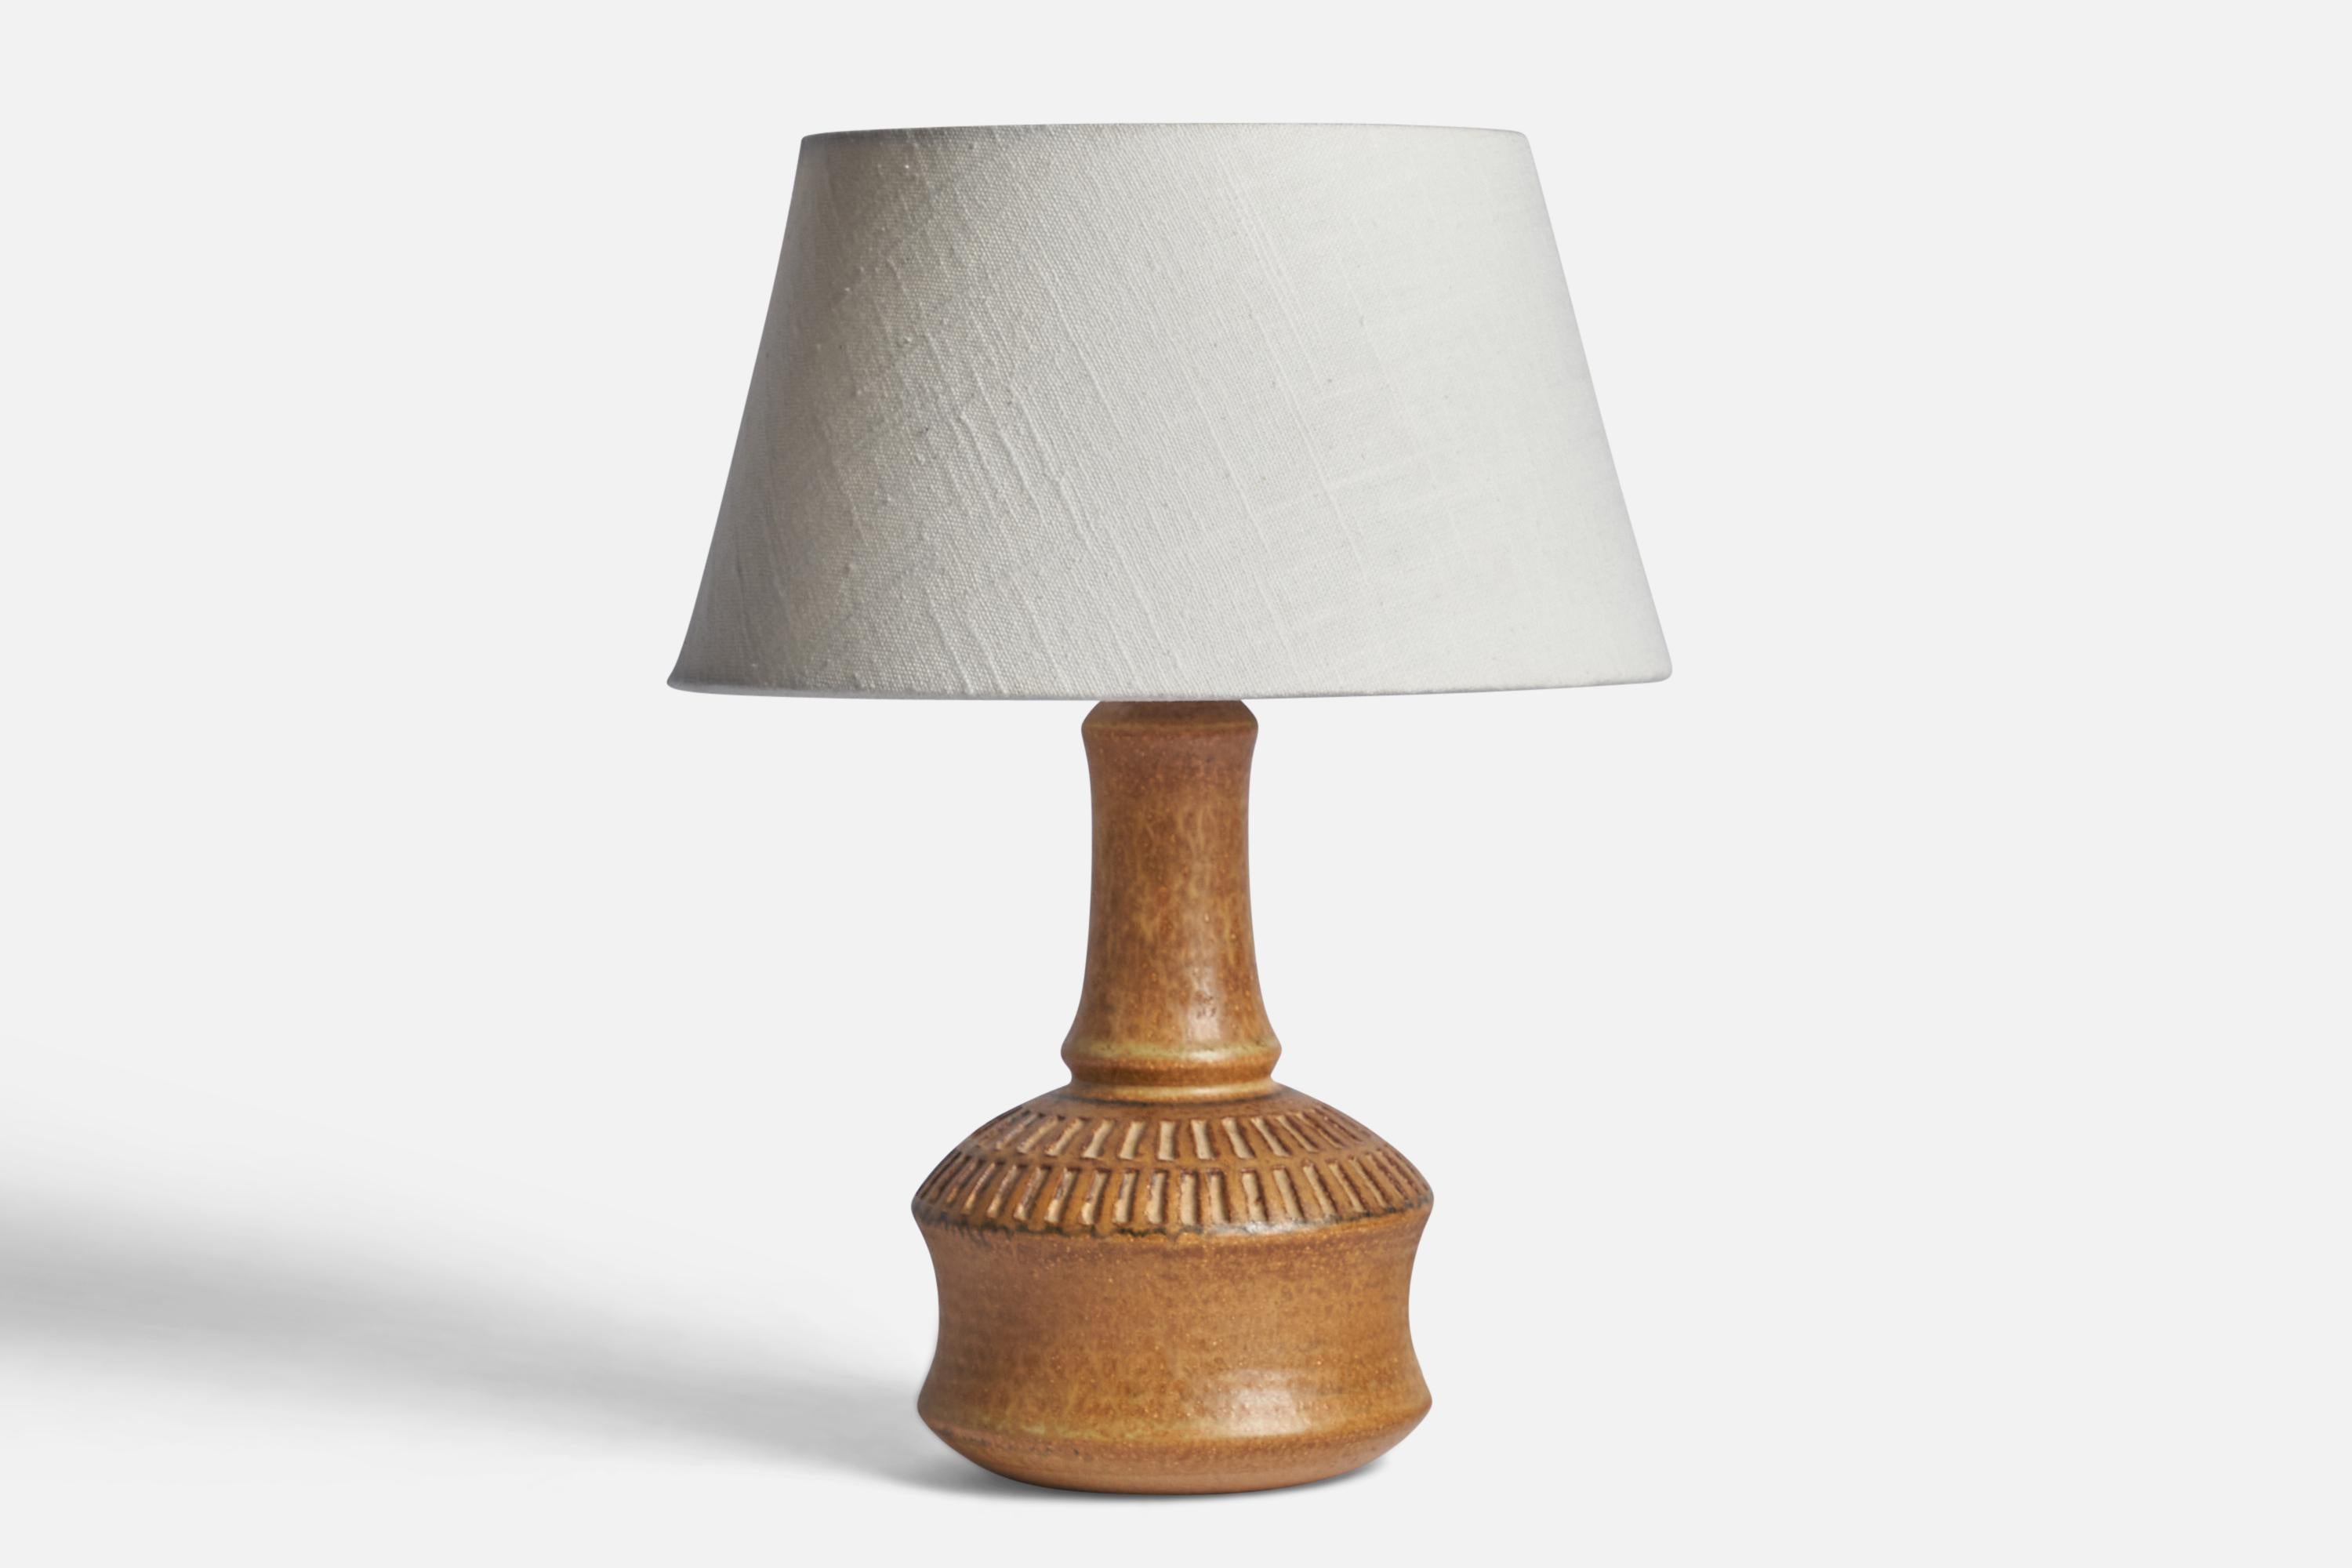 Tischlampe aus hellbraun glasiertem Steingut, entworfen von Joseph Simon und hergestellt von Søholm, Bornholm, Dänemark, 1960er Jahre.

Abmessungen der Lampe (Zoll): 10,25